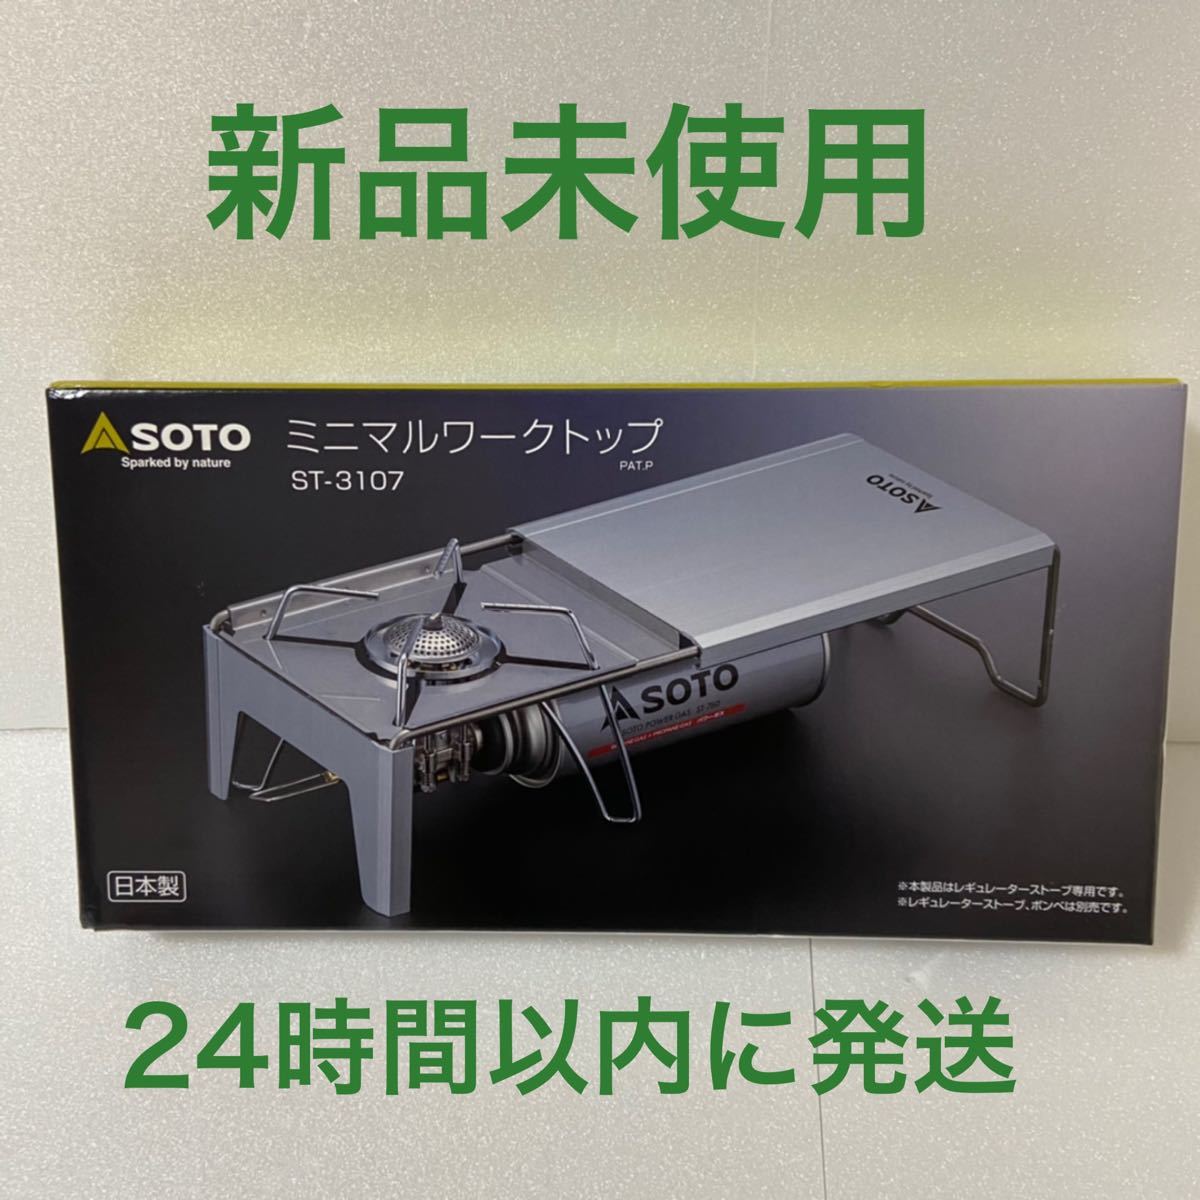 【新品未使用】SOTO(ソト 新富士バーナー) ミニマルワークトップ ST-3107